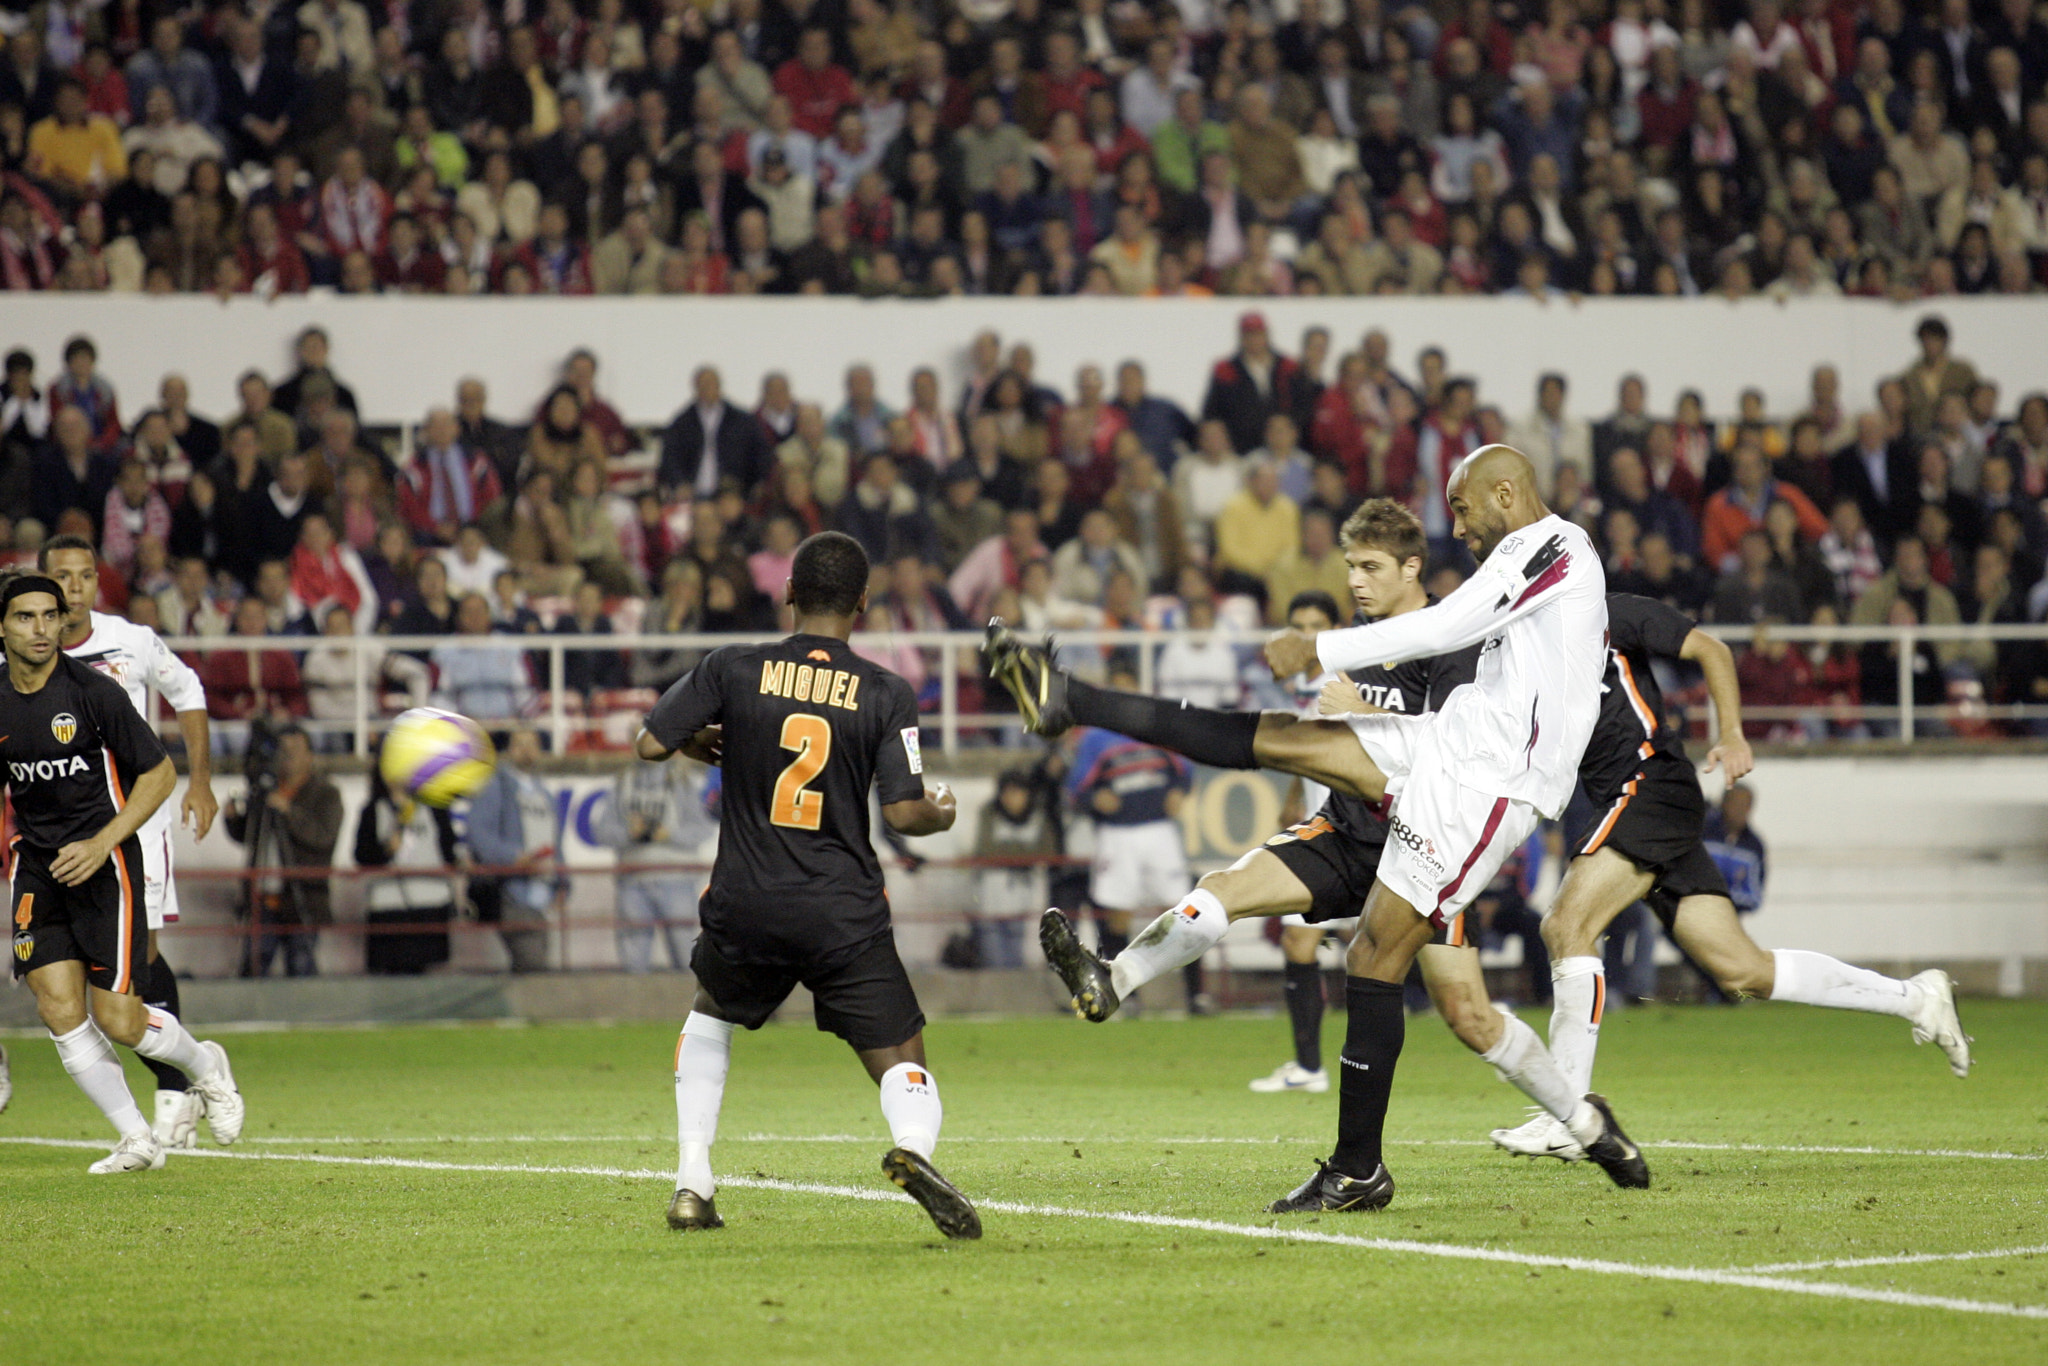 Kanoute shooting on goal. Taken at Sanchez Pizjuan stadium (Sevilla, Spain) on 18 November 2006 duri